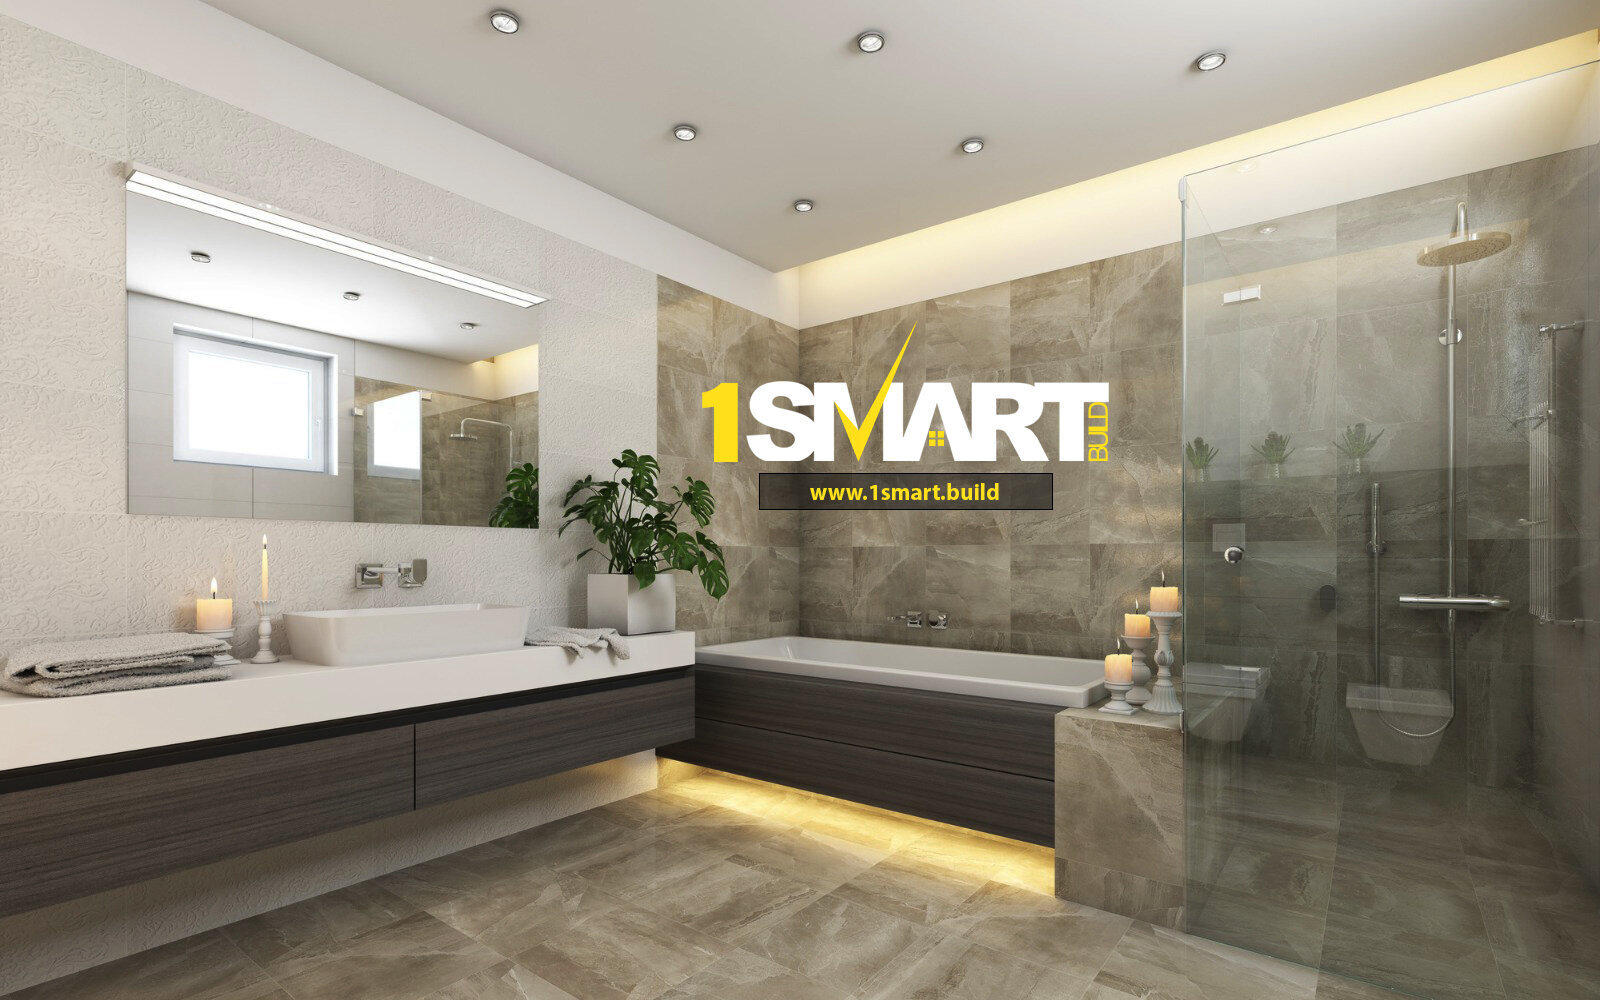 1 Smart Build - Construction Company,  Bathroom Remodeler, Kitchen Remodeler Los Angeles (866)419-8840